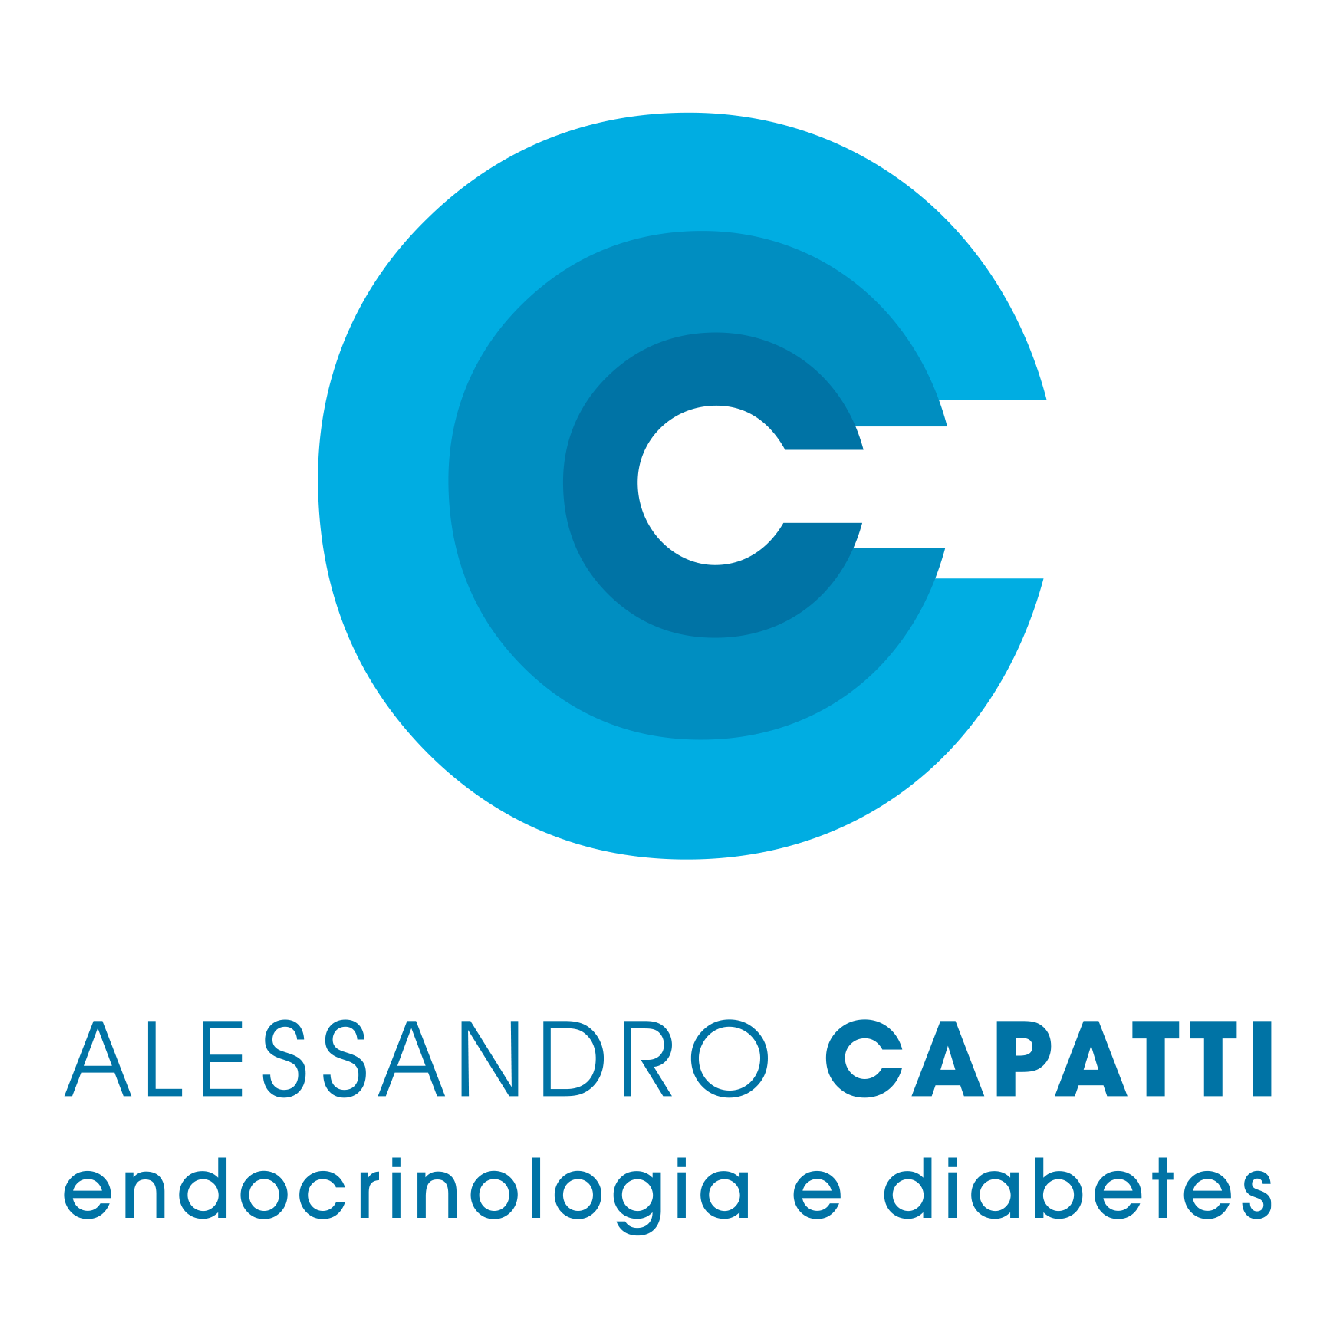 Dr. Alessandro Capatti